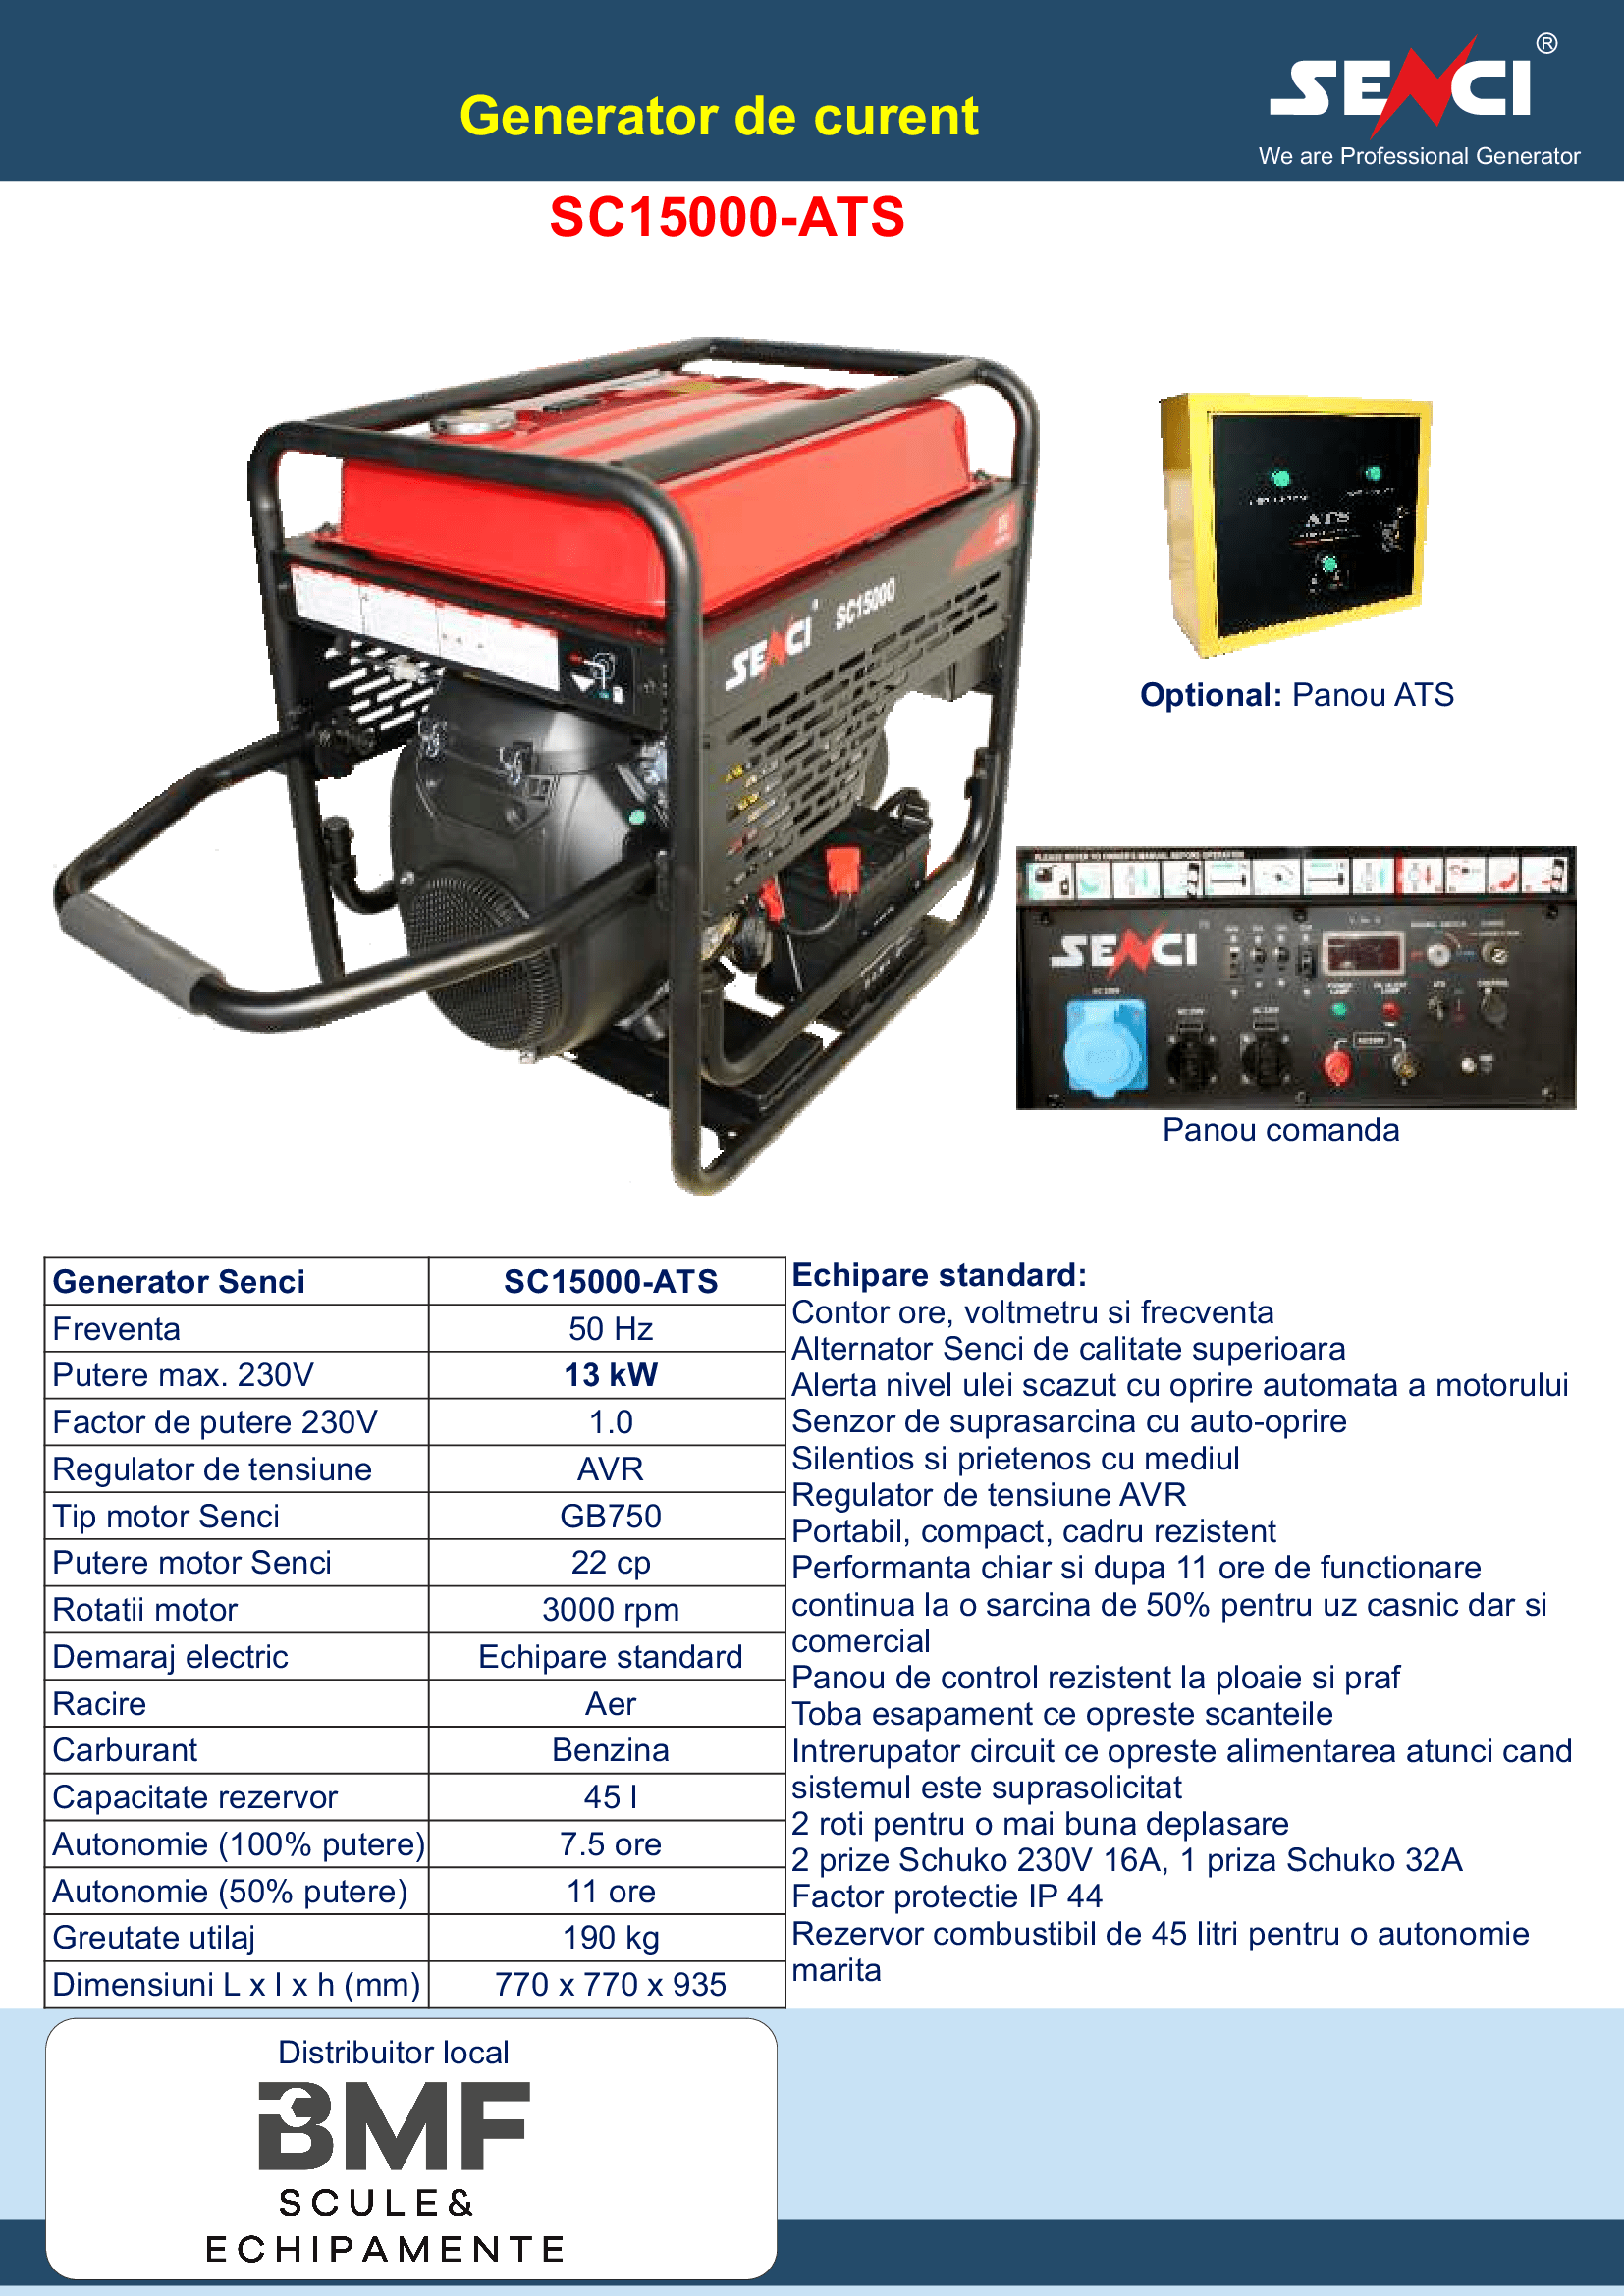 SC15000 ATS generator de curent Senci Distribuitor